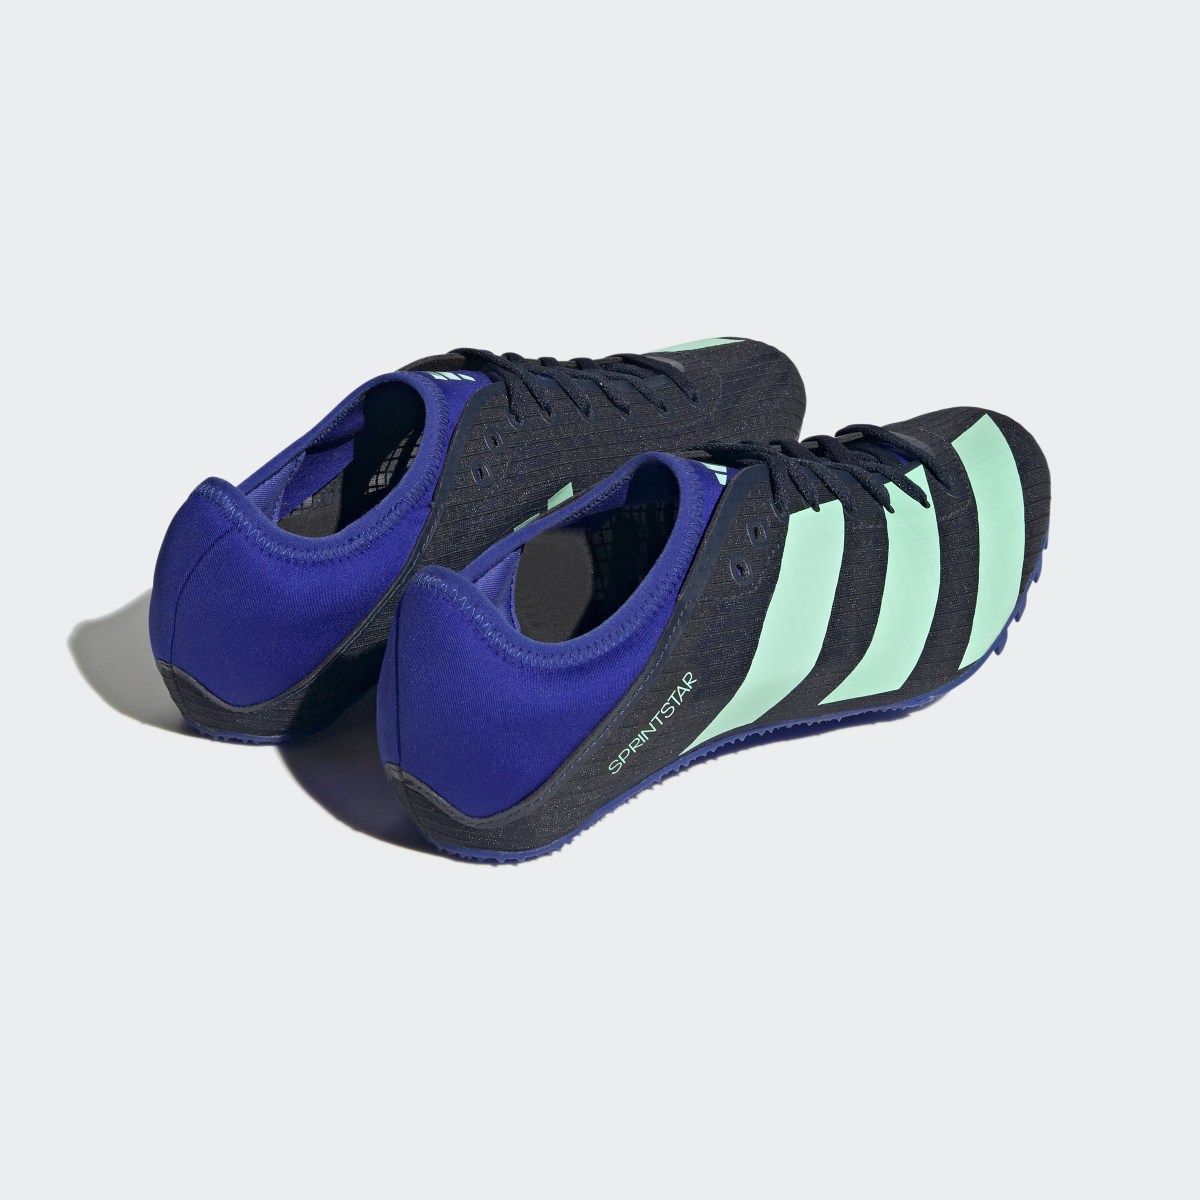 Adidas Sprintstar Spike-Schuh. 6